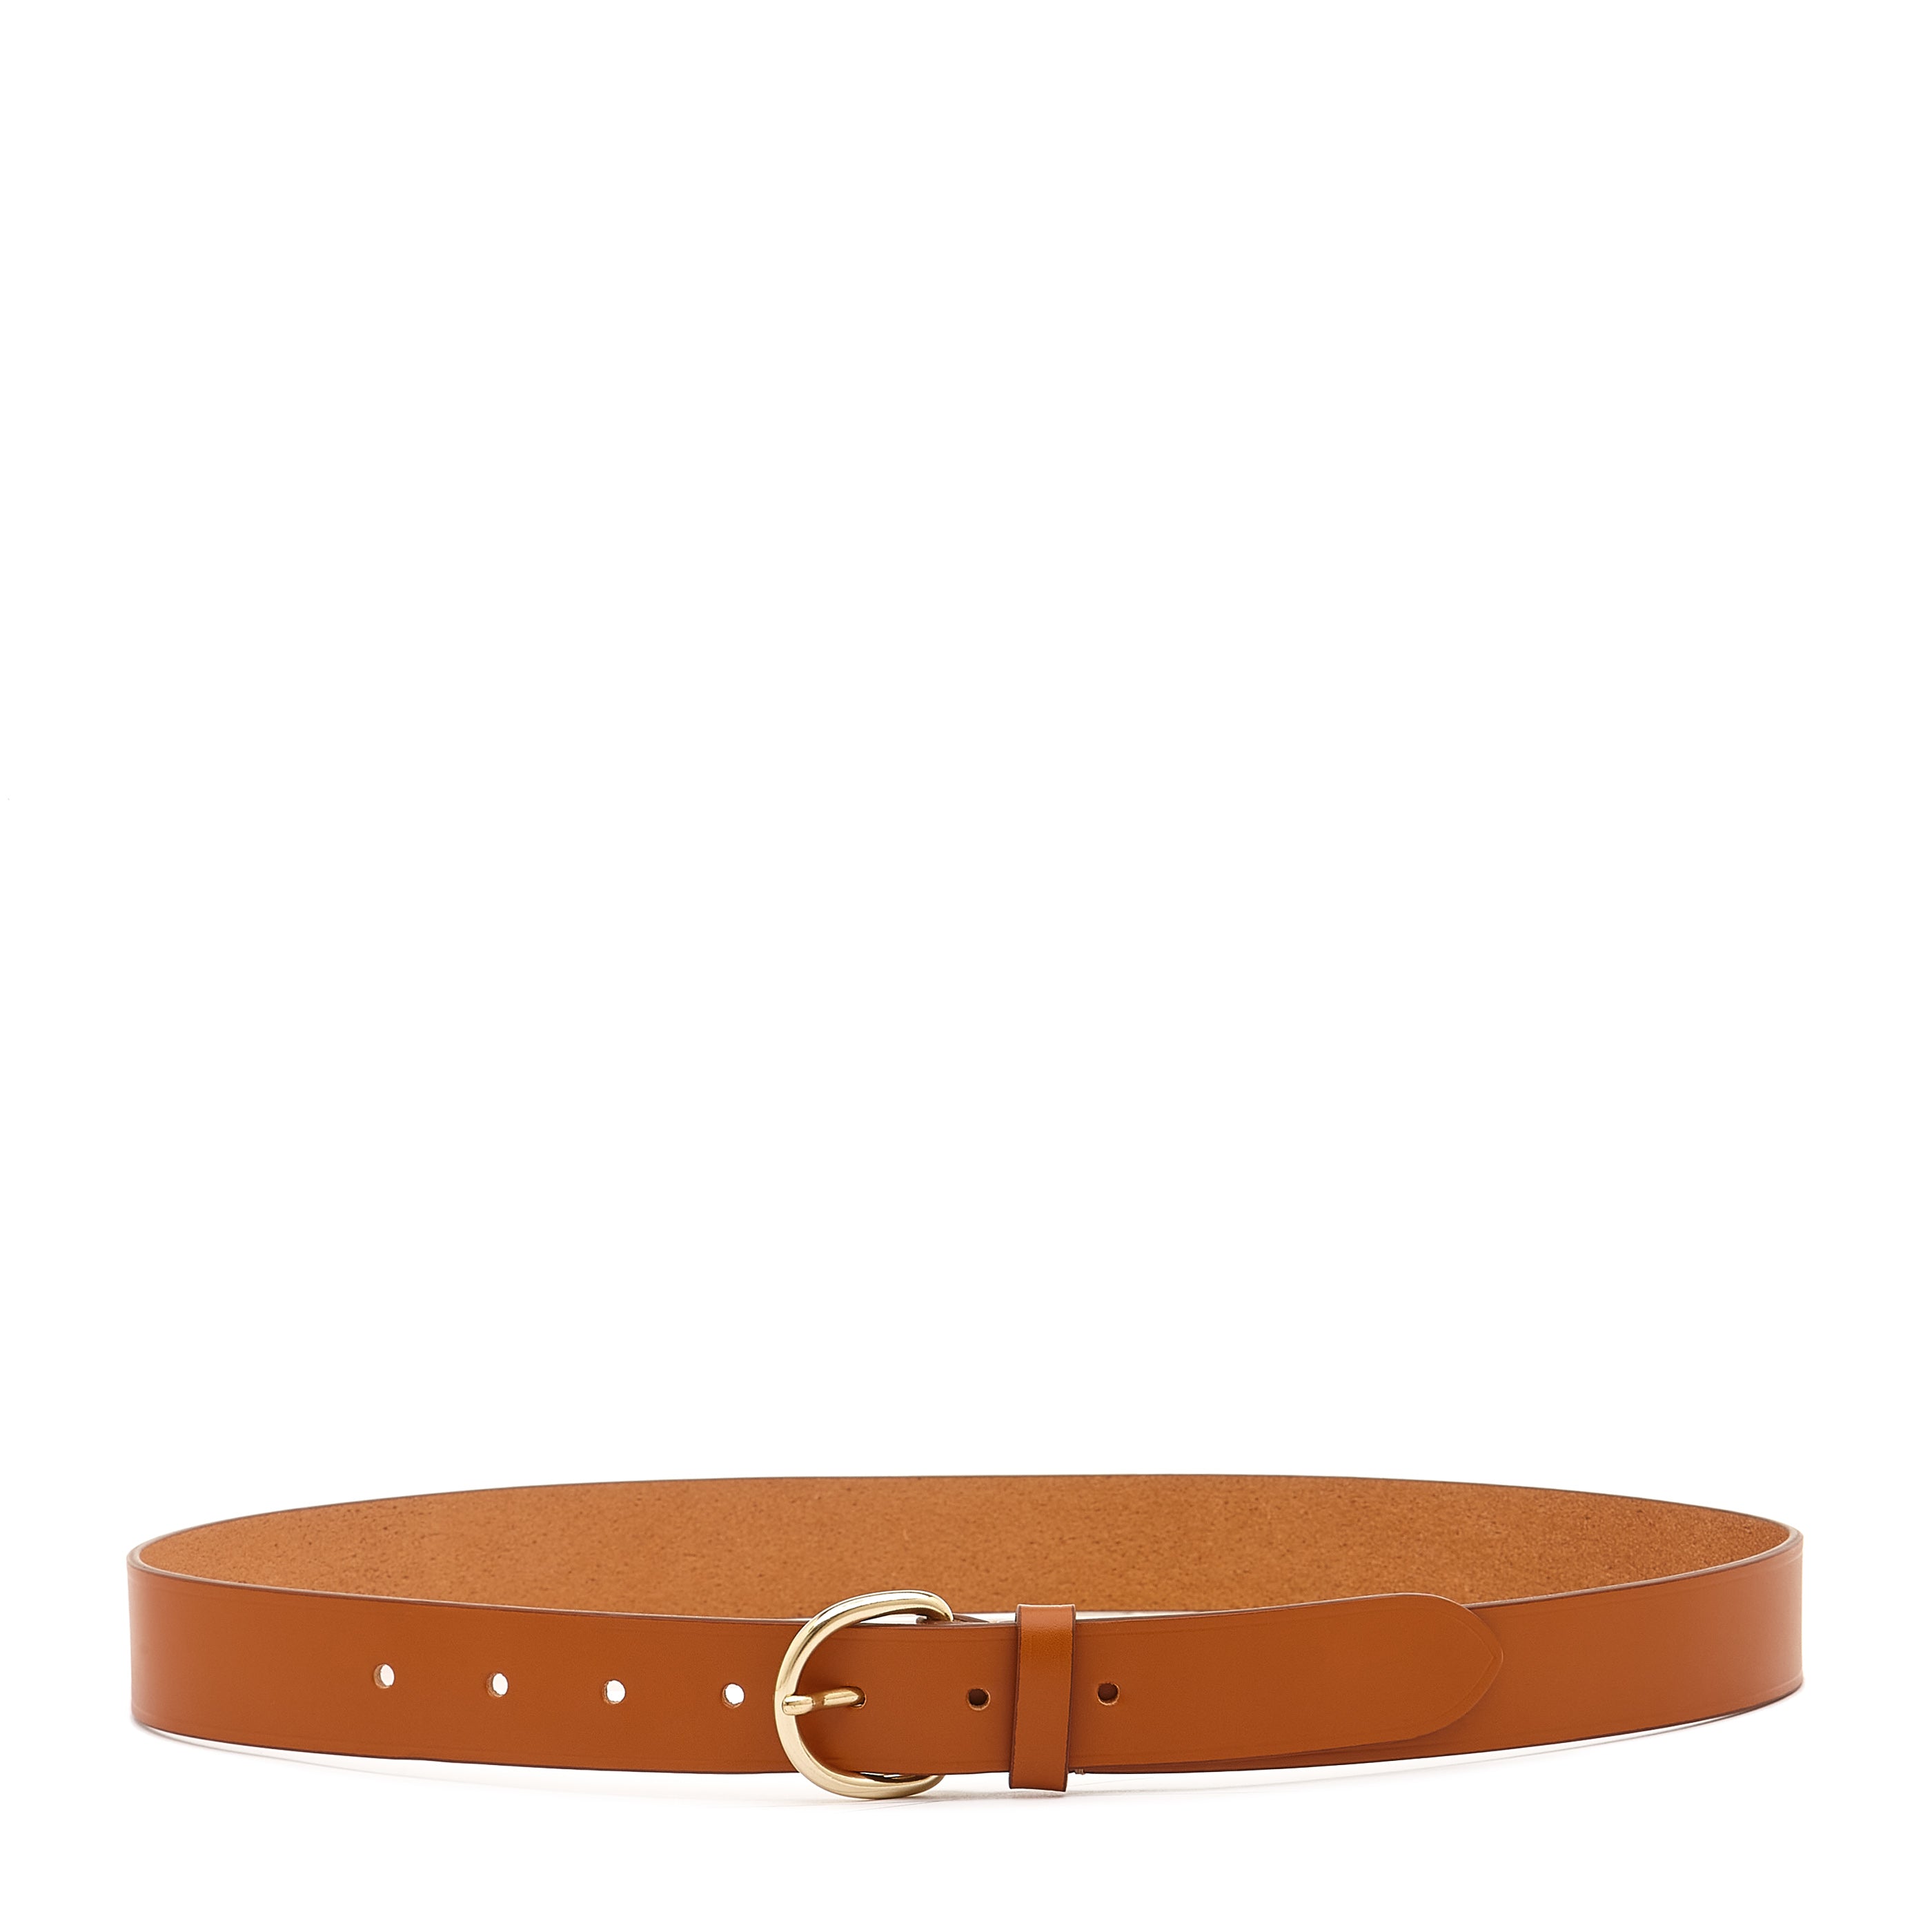 Belt in leather color caramel